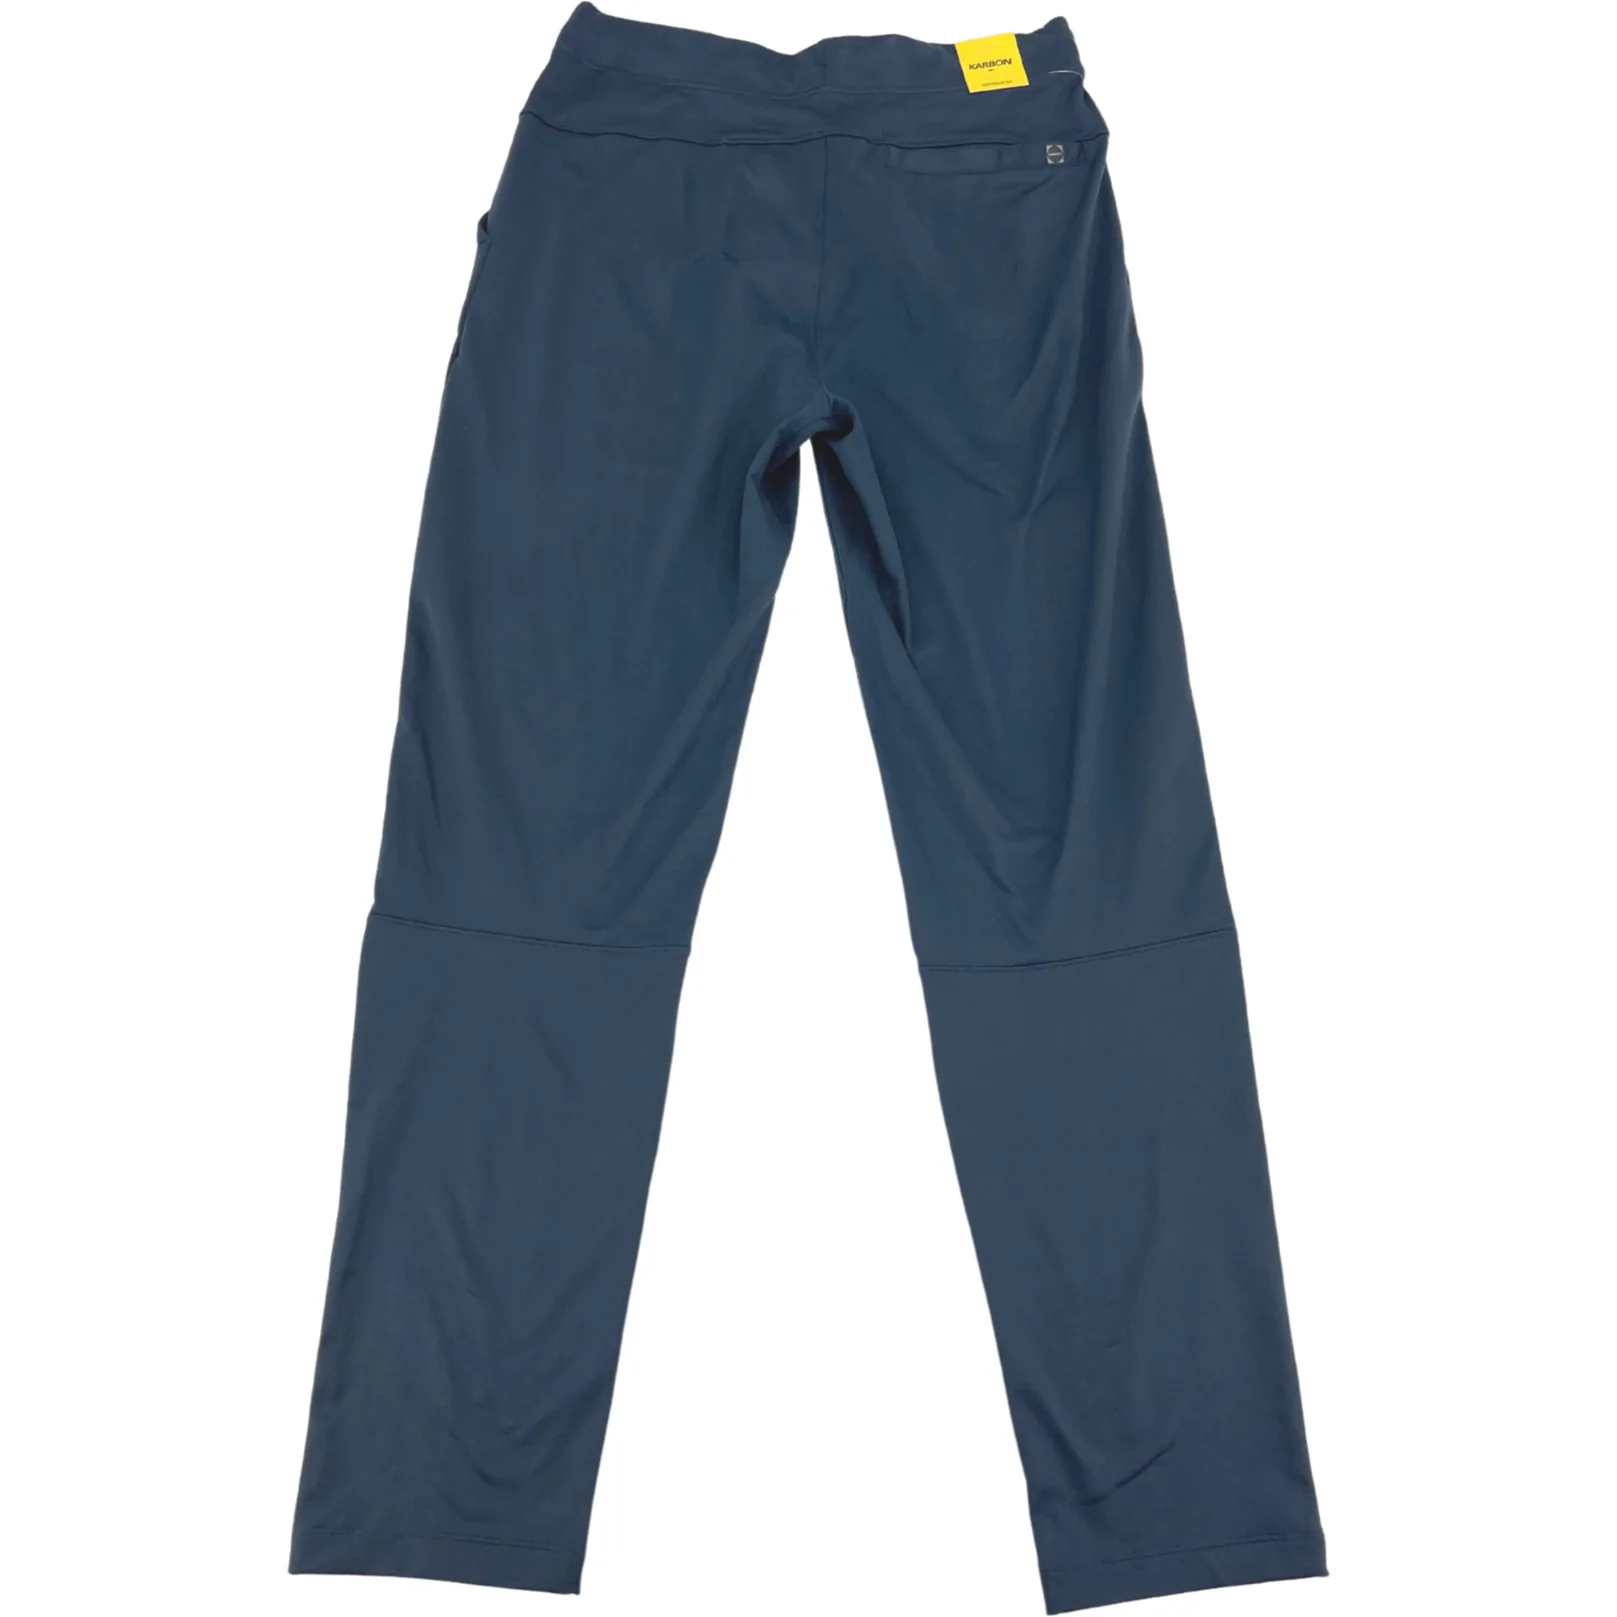 Karbon Men's Sweatpants / Athletic Pants / Navy / Joggers / Various Sizes